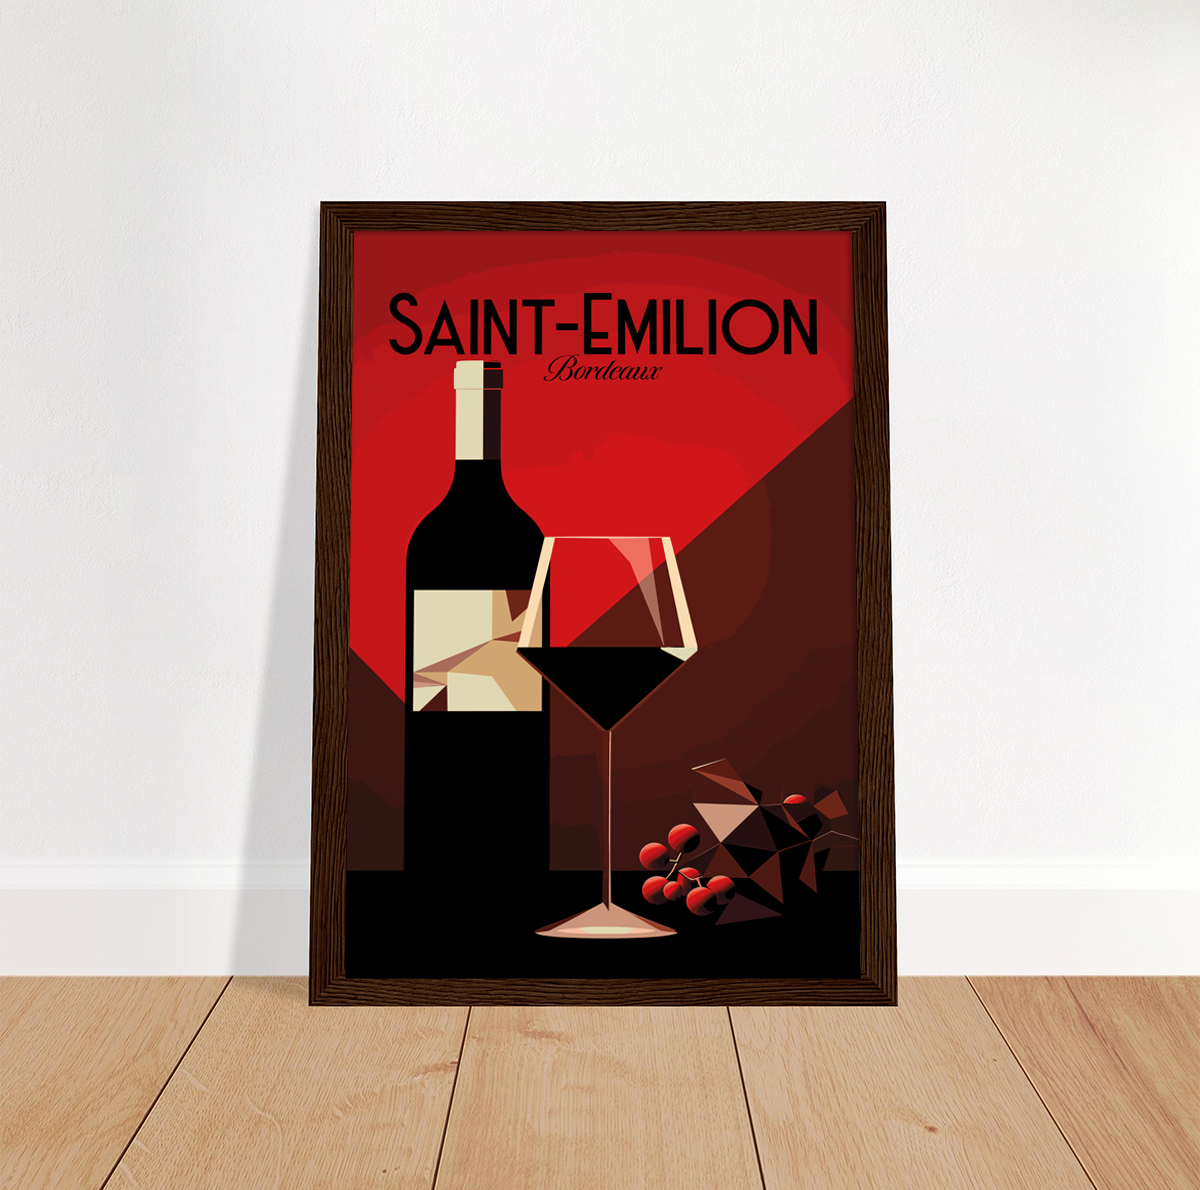 Saint-Emilion poster by bon voyage design